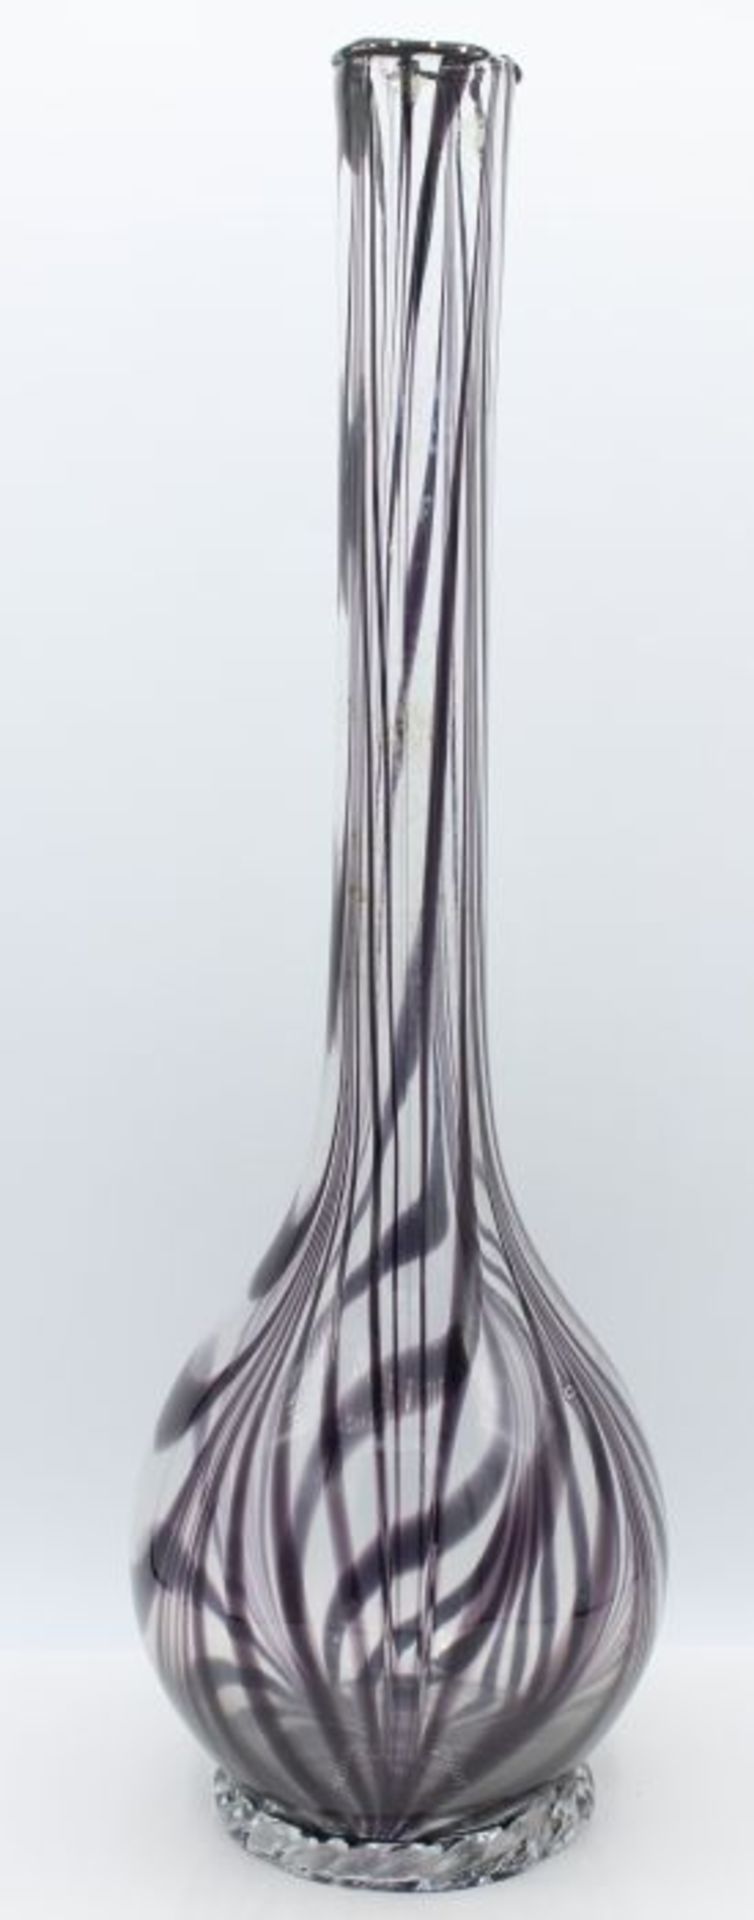 Vase um 1970 farbloses Glas mit violetten Fadeneinschmelzungen, Plinthe best., Abriß, Höhe ca. 41